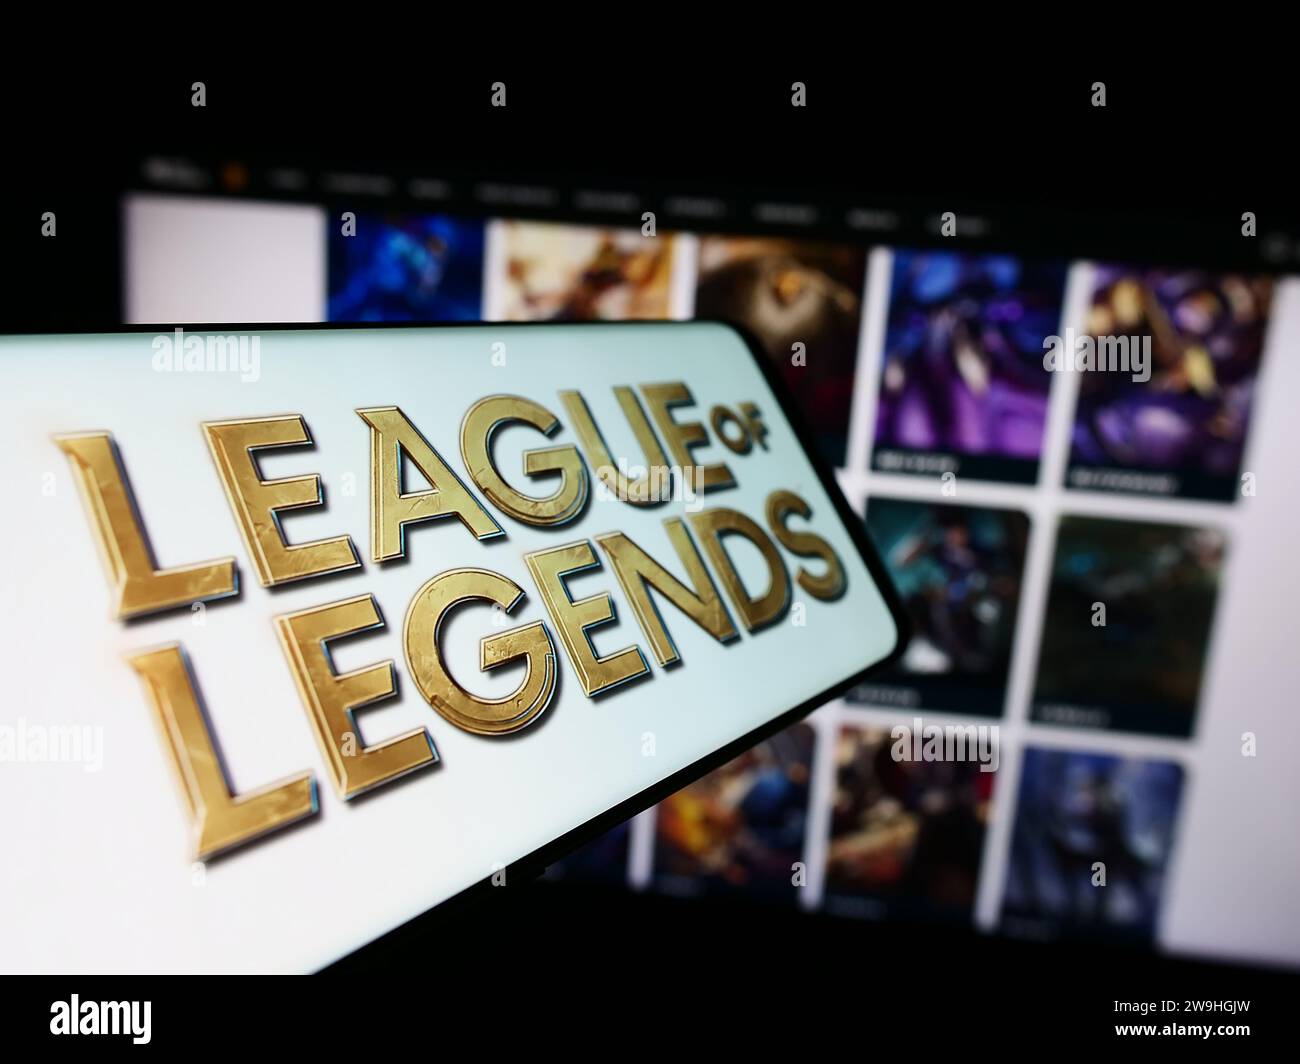 Telefono cellulare con il logo del videogioco multiplayer online League of Legends (LoL) davanti al sito Web. Mettere a fuoco il display centrale sinistro del telefono. Foto Stock